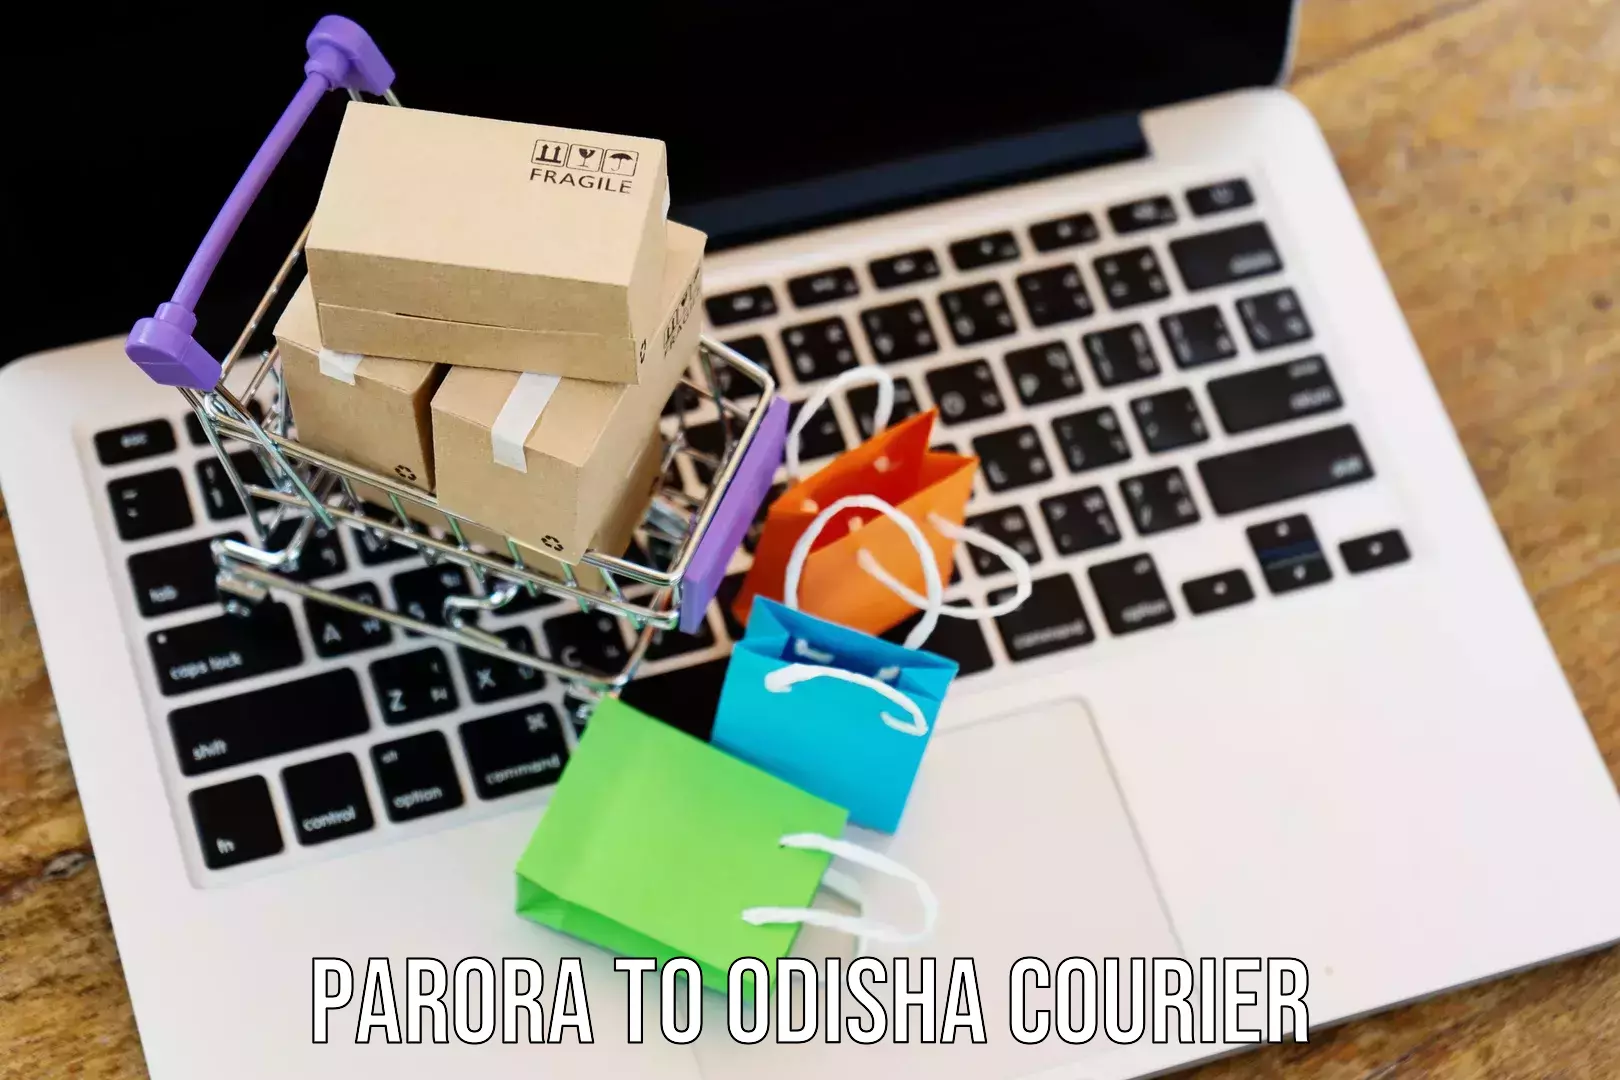 Premium courier solutions Parora to Jeypore